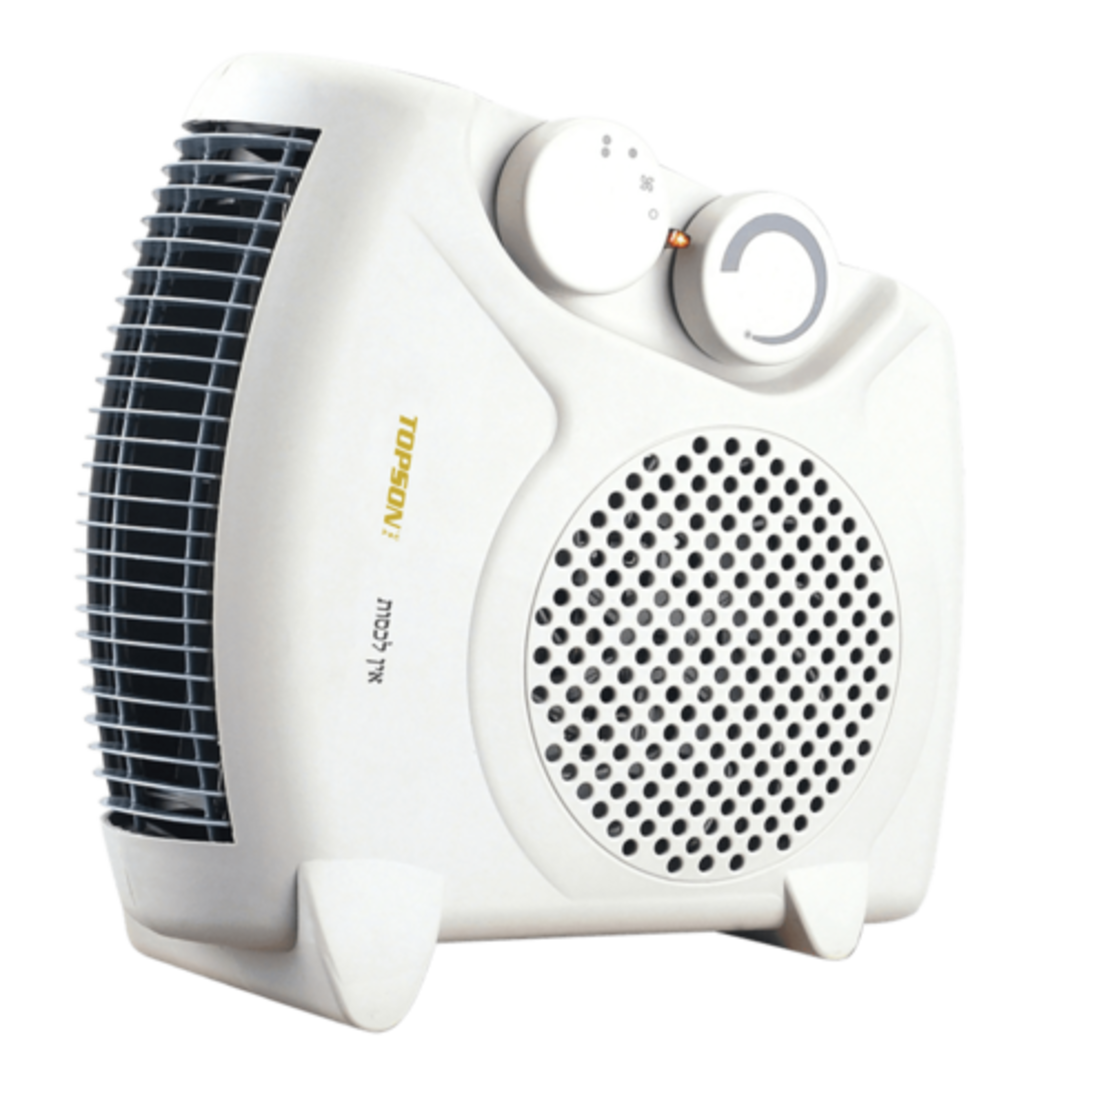 Topson TP-901 fan heater